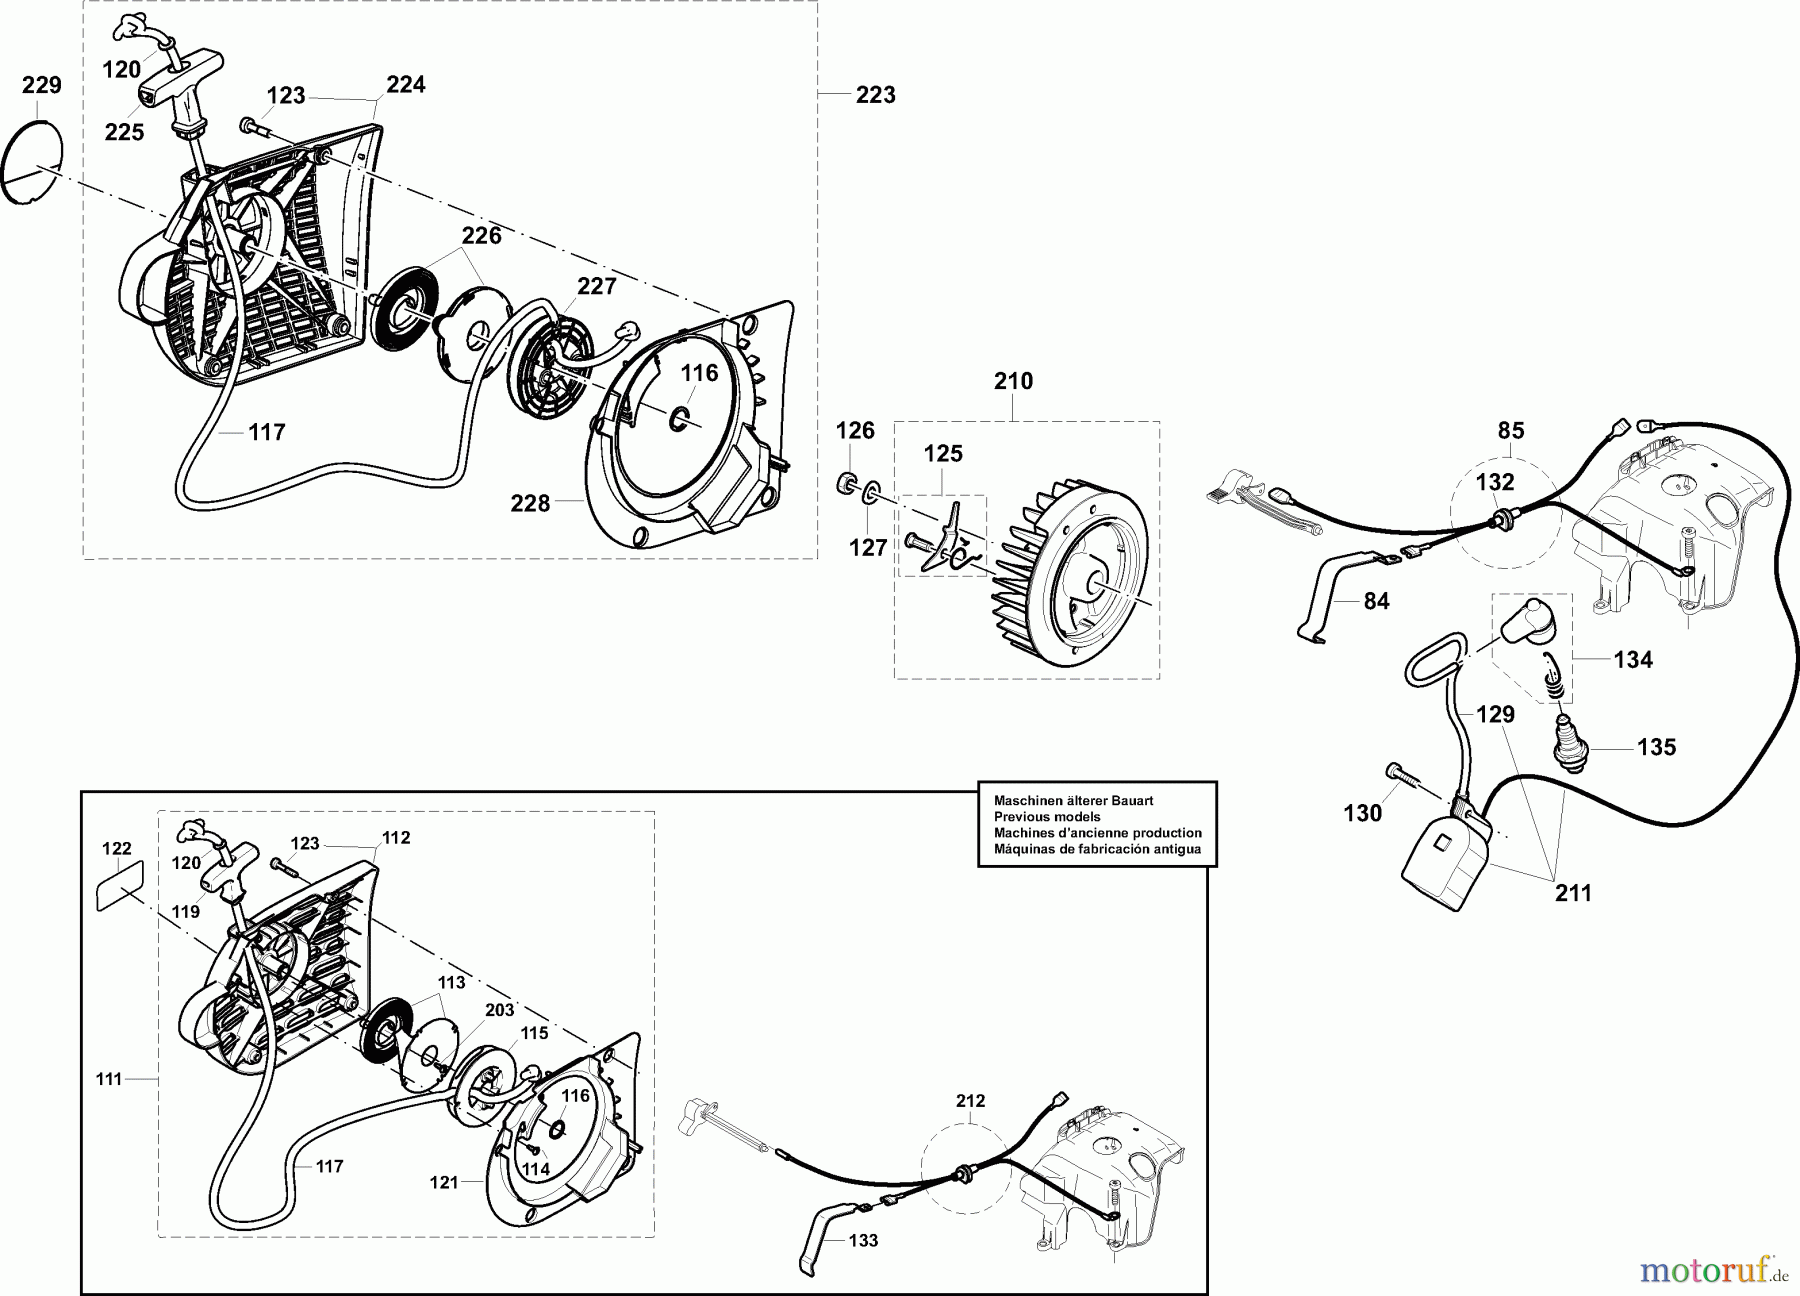  Dolmar Trennschleifer Benzin PC-7312 CD 5  Anwerfvorrichtung, Magnetzünder